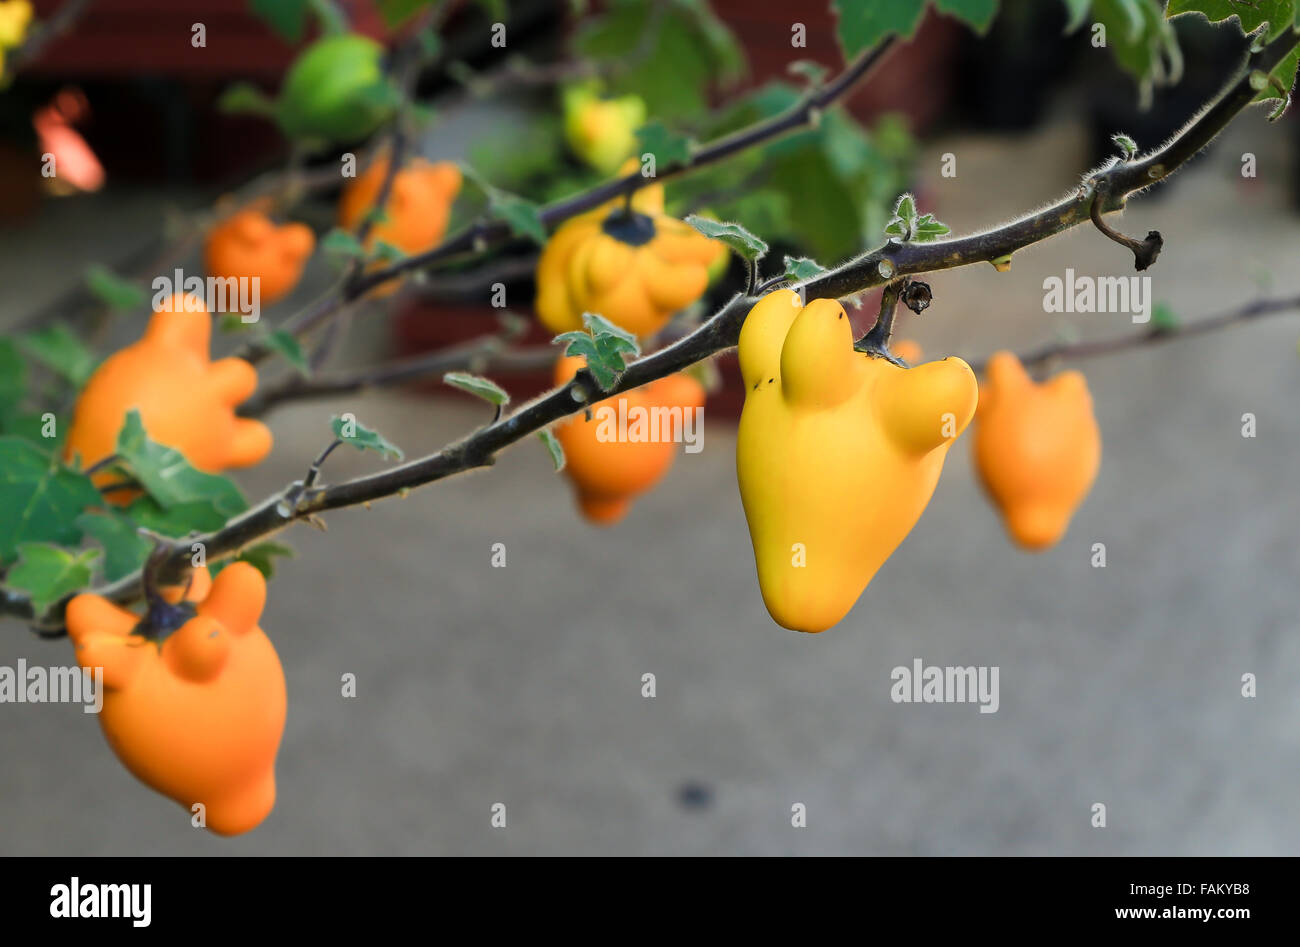 Le fruit ressemble à poupée sur la branche, leurs couleurs sont le jaune et orange. Banque D'Images